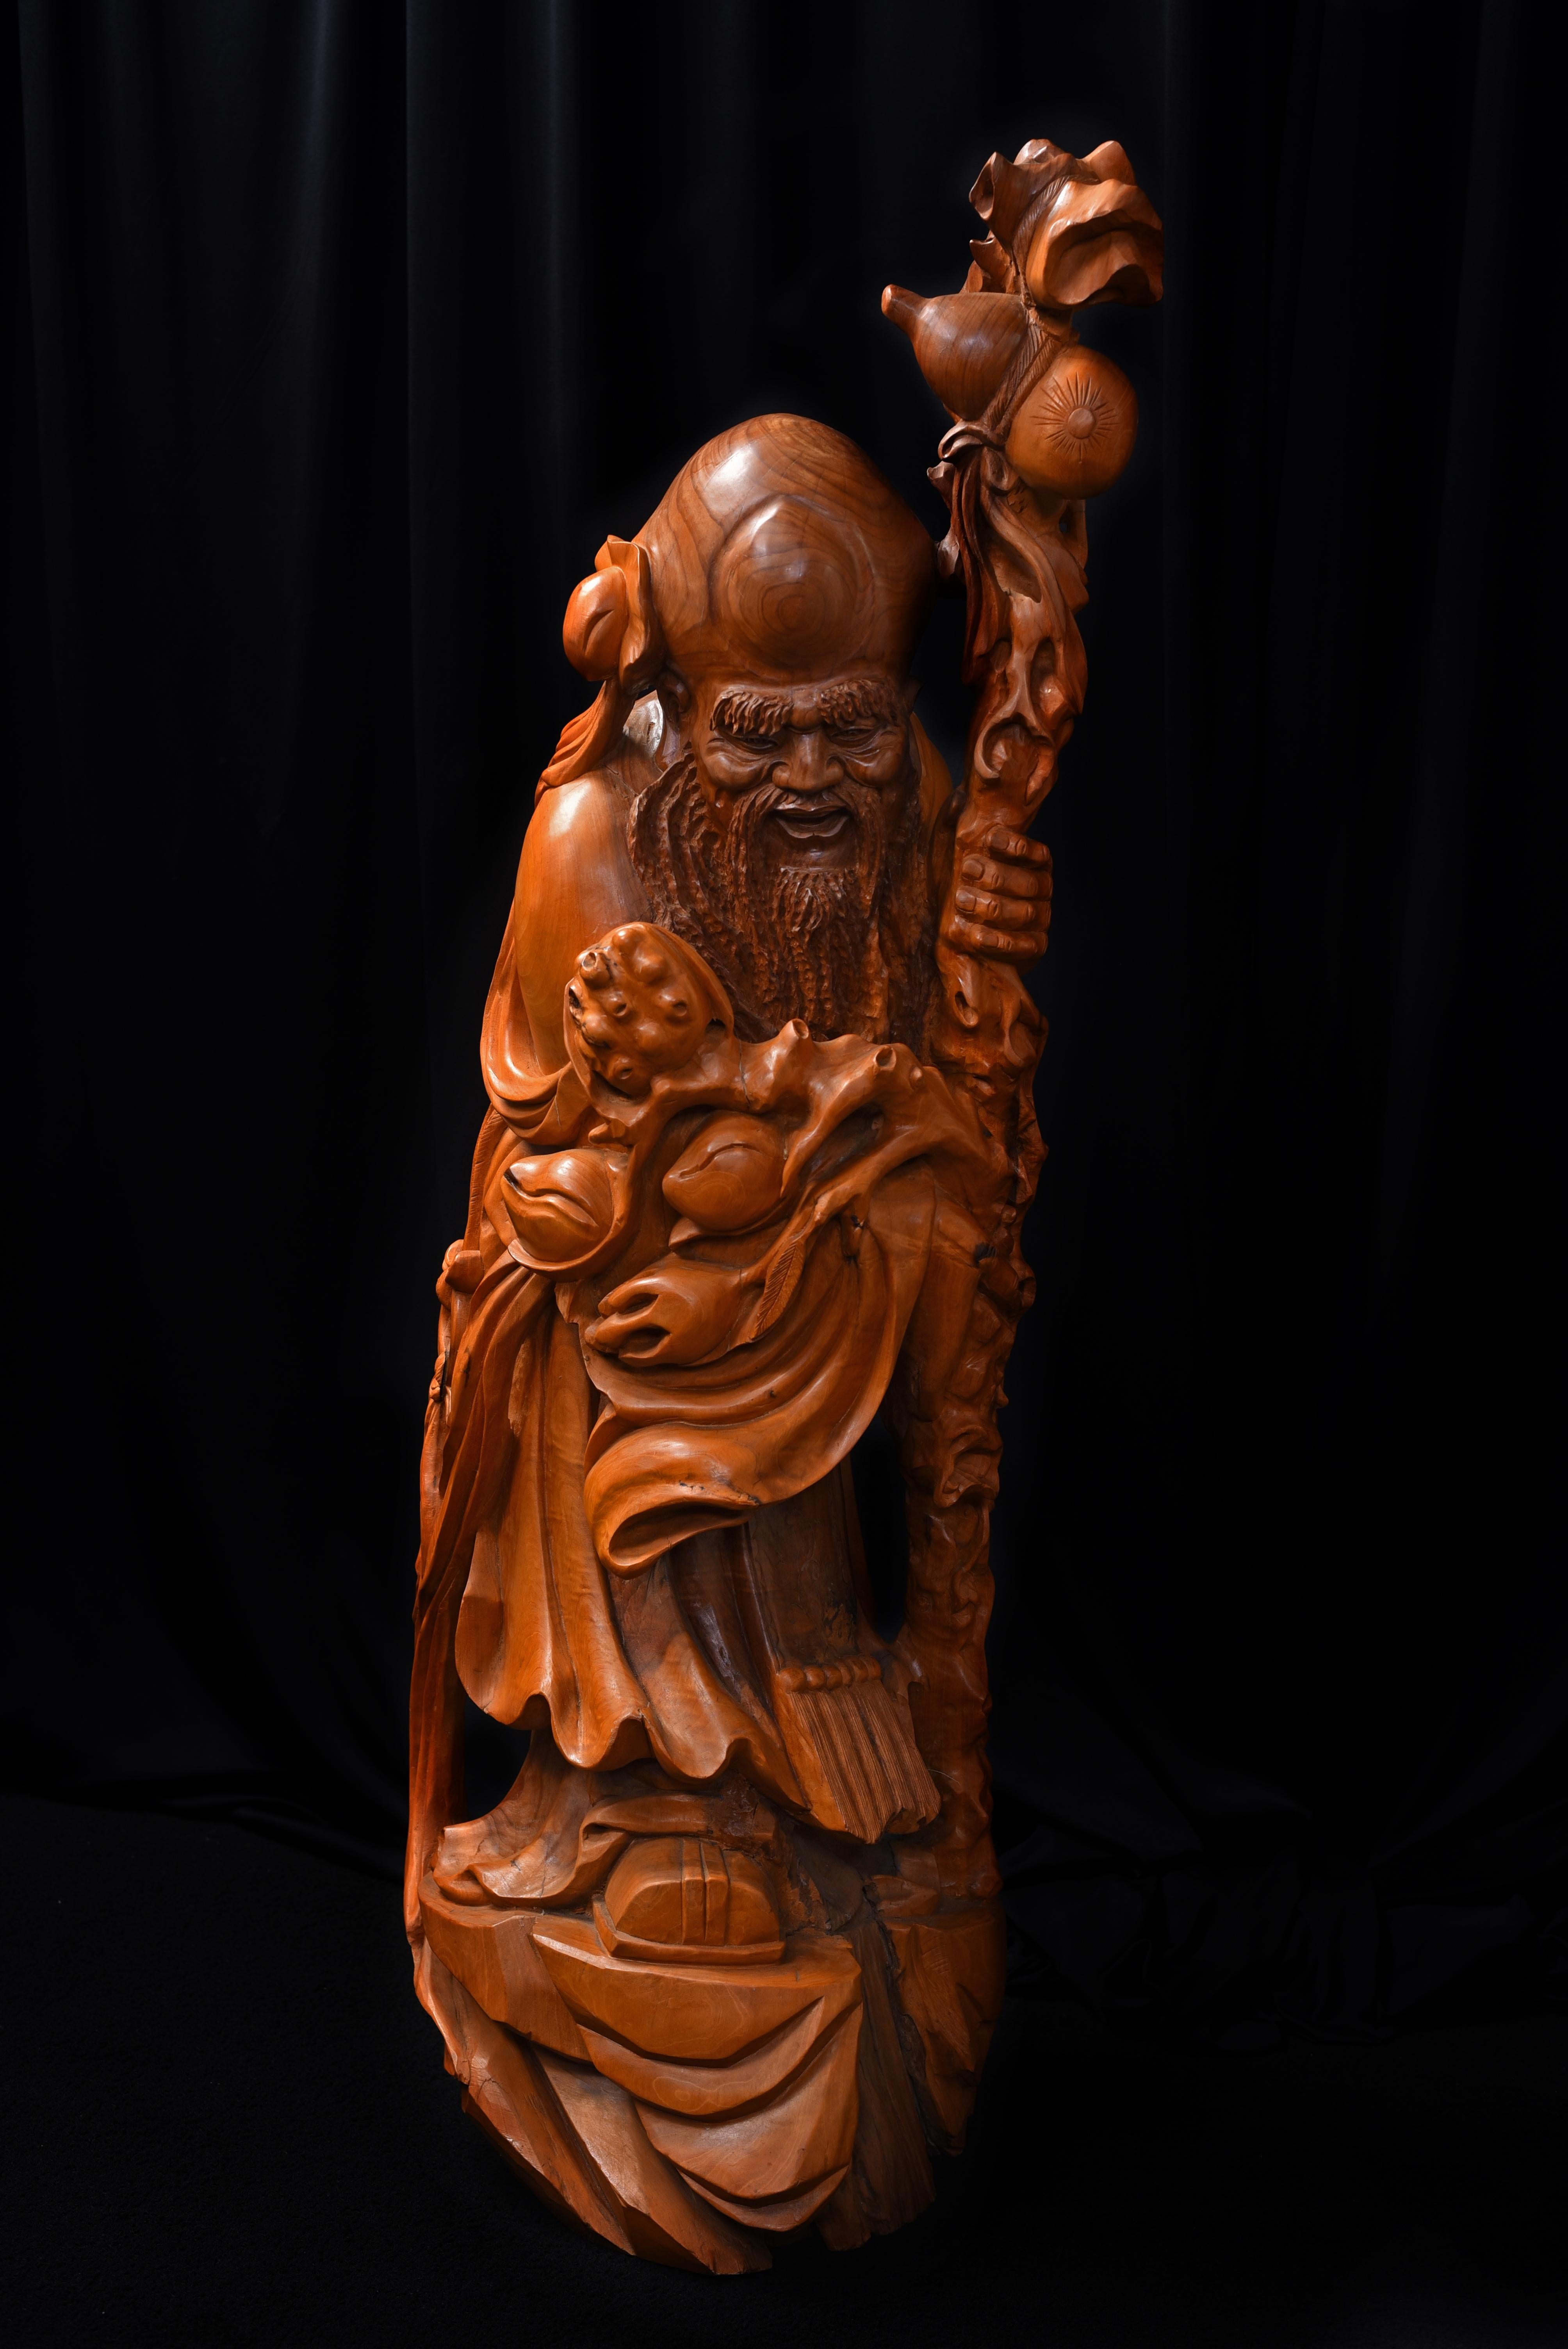 Atemberaubende chinesische Skulptur von Shou Xing, Gott der Weisheit und Langlebigkeit.
Reichlich geschnitzt aus organischem Wurzelholz.
ca. 1960er Jahre.
Maße: 45,5